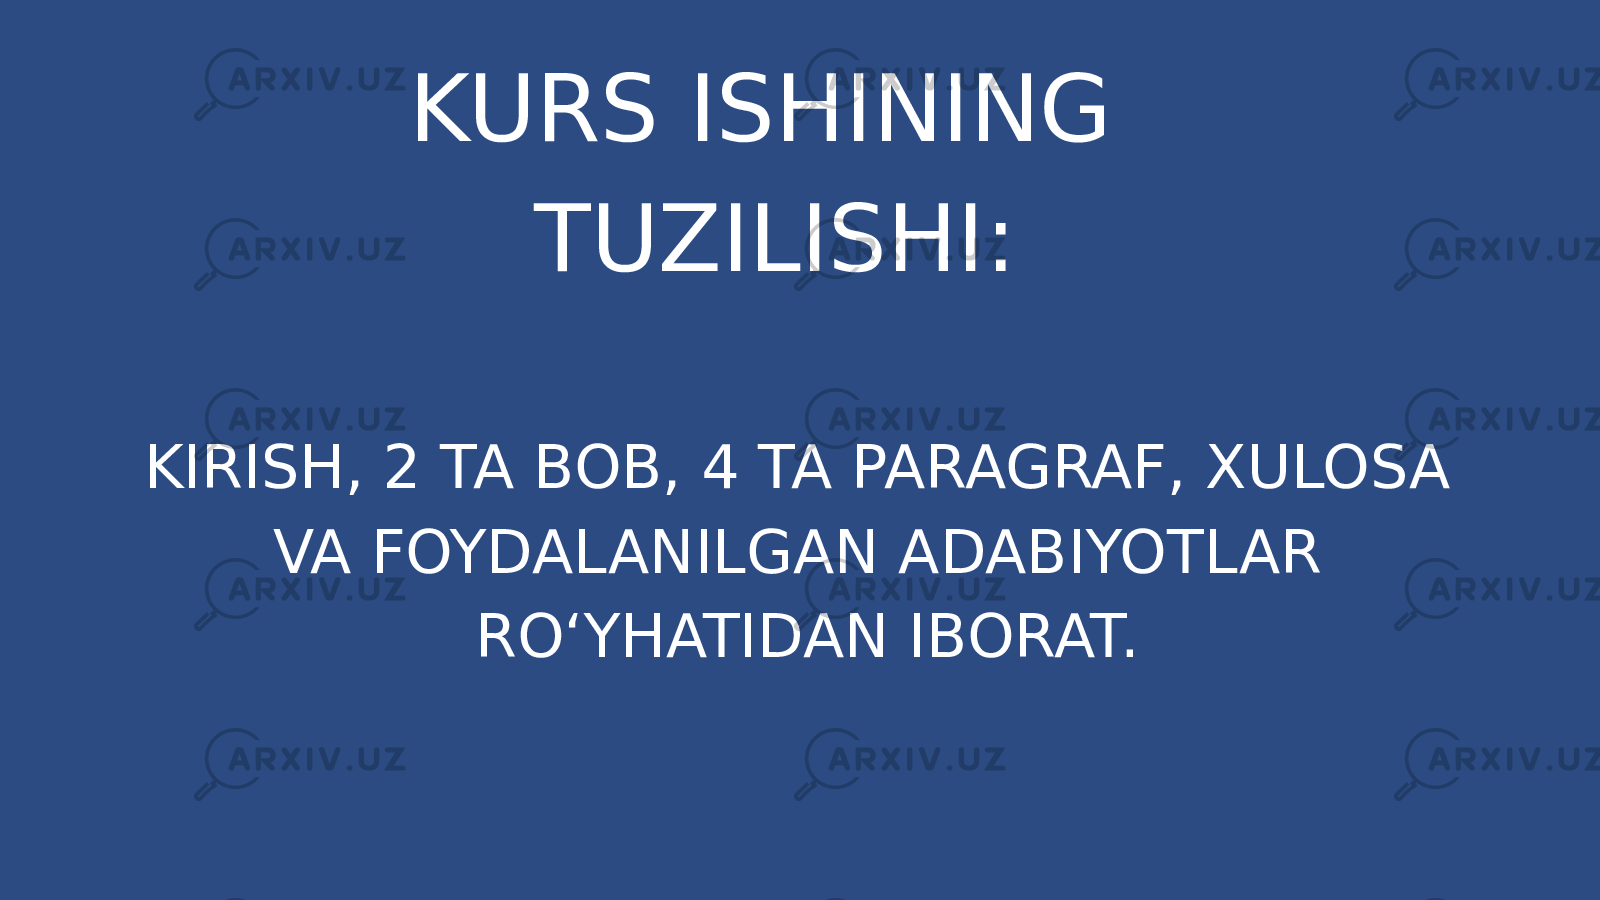 KURS ISHINING TUZILISHI: KIRISH, 2 TA BOB, 4 TA PARAGRAF, XULOSA VA FOYDALANILGAN ADABIYOTLAR RO‘YHATIDAN IBORAT. 